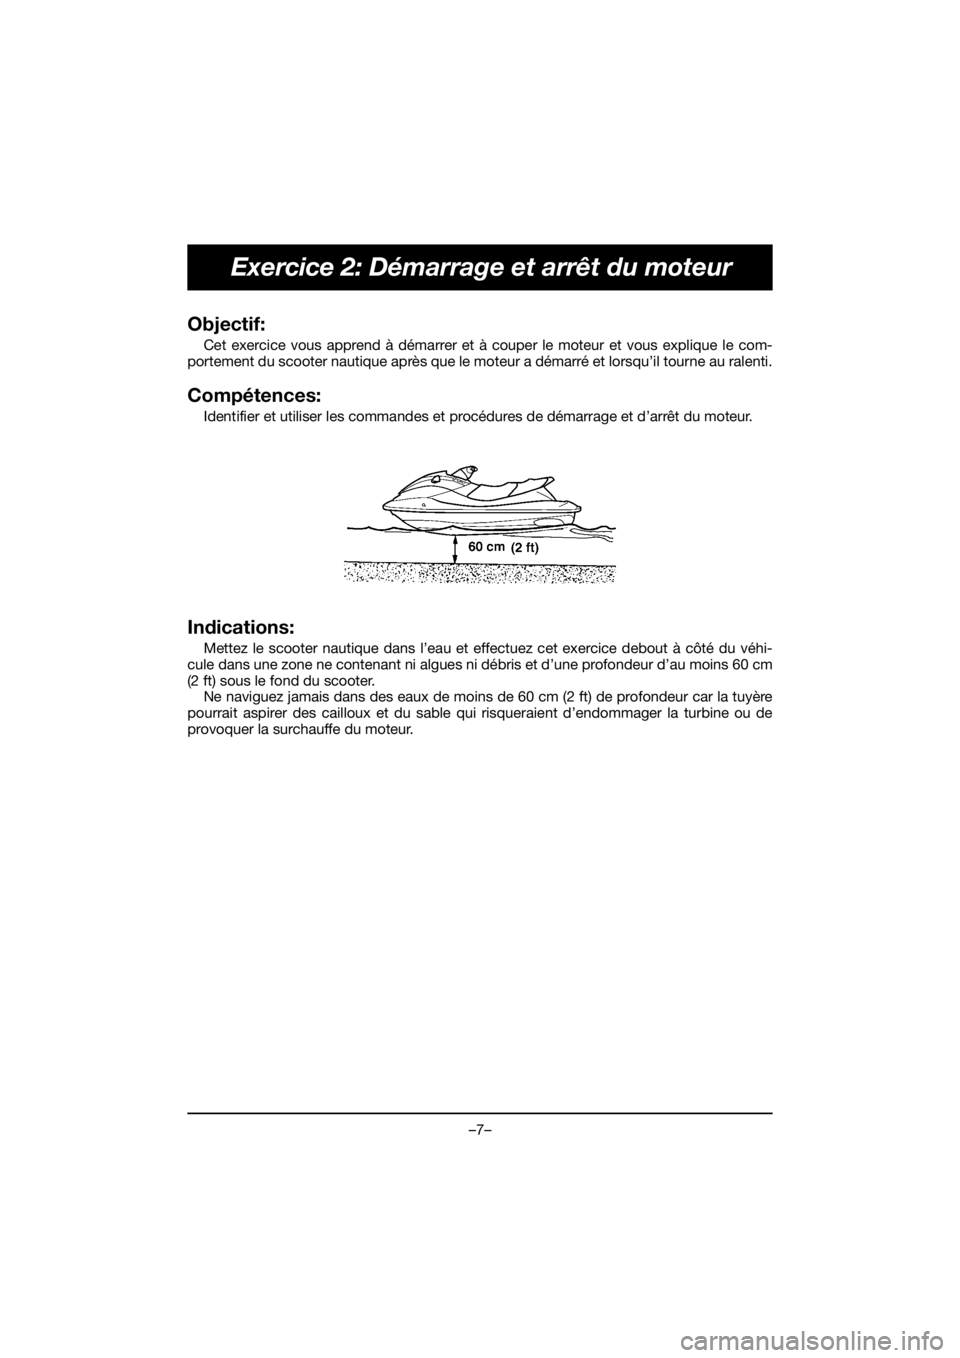 YAMAHA VX CRUISER HO 2020  Manual de utilização (in Portuguese) –7–
Exercice 2: Démarrage et arrêt du moteur
Objectif: 
Cet exercice vous apprend à démarrer et à couper le moteur et vous explique le com-
portement du scooter nautique après que le moteur 